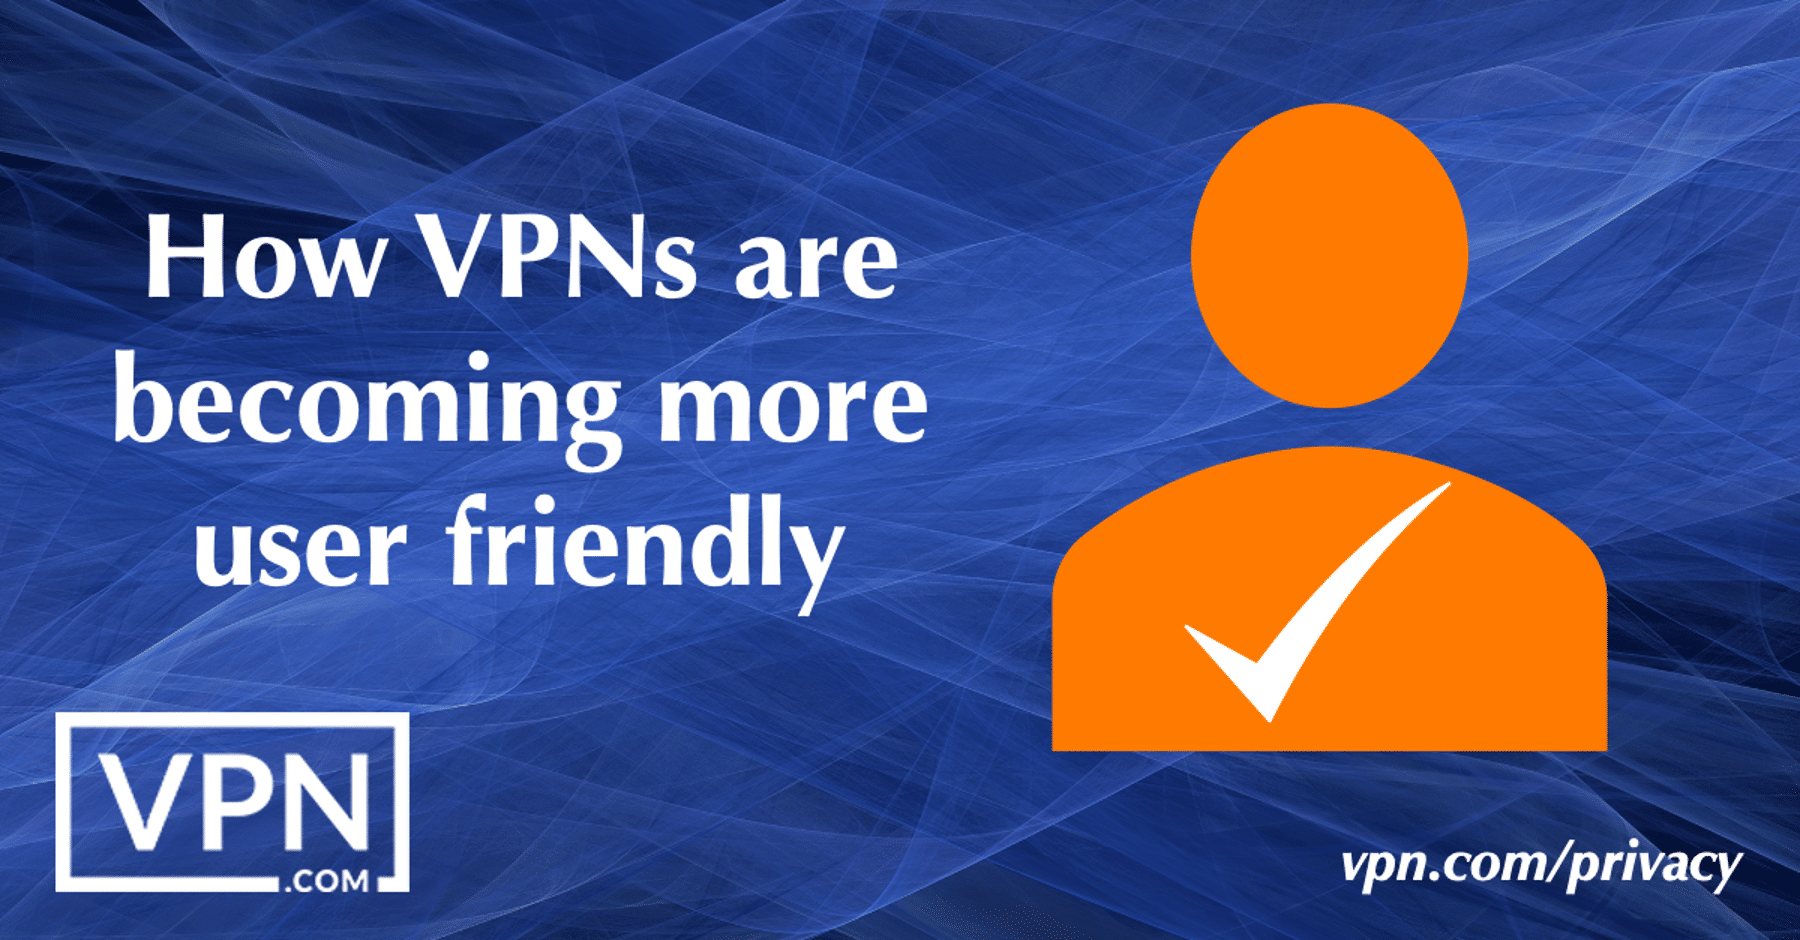 Kaip VPN tampa patogesni naudoti.